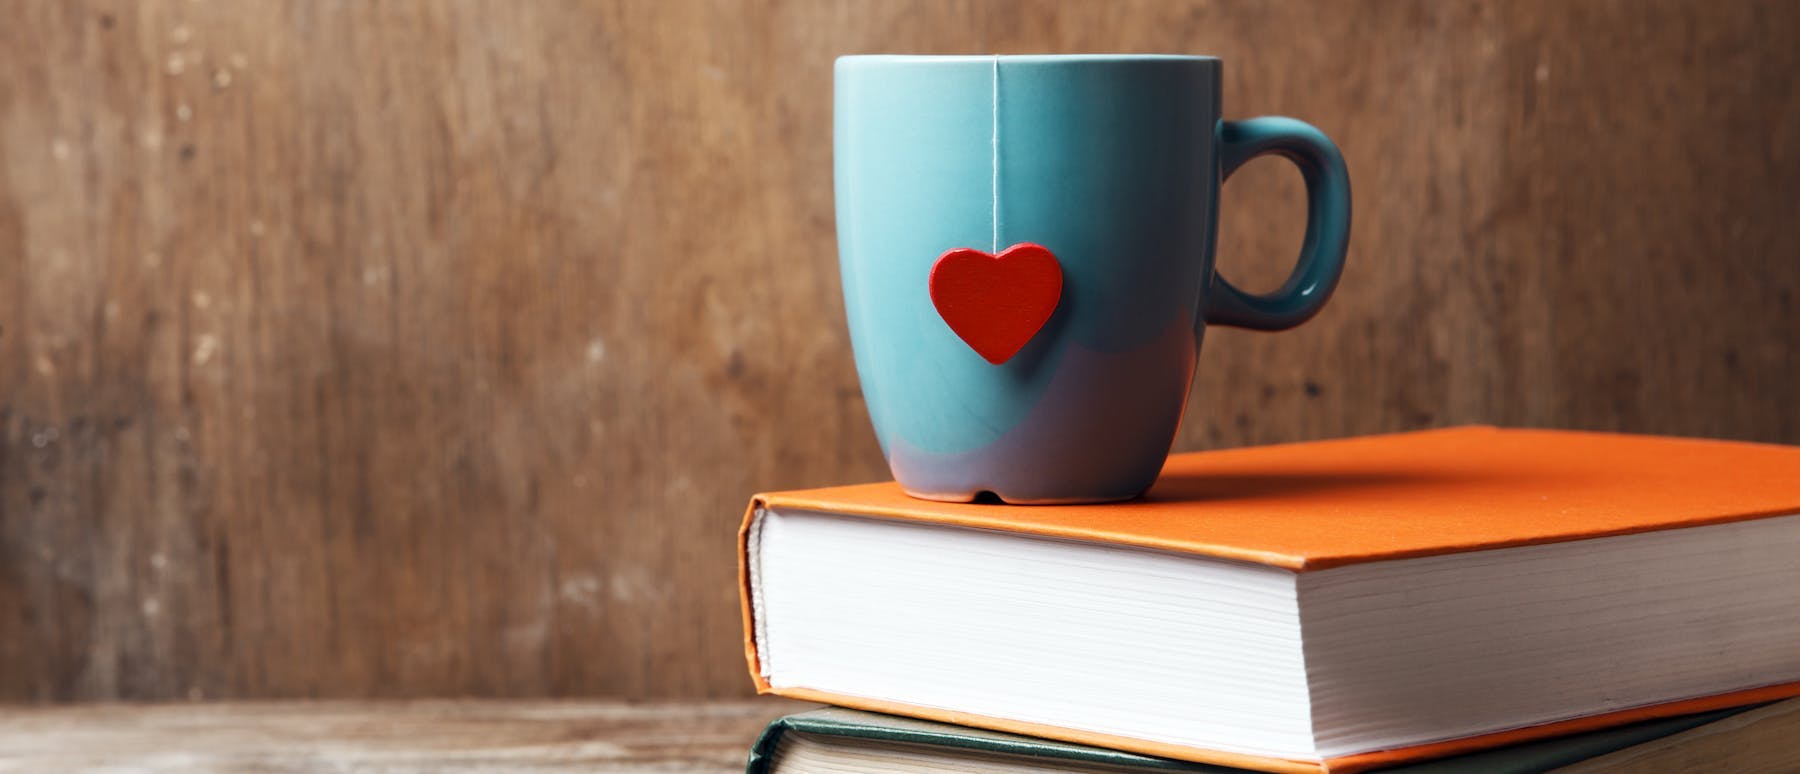 A coffee mug placed on a book